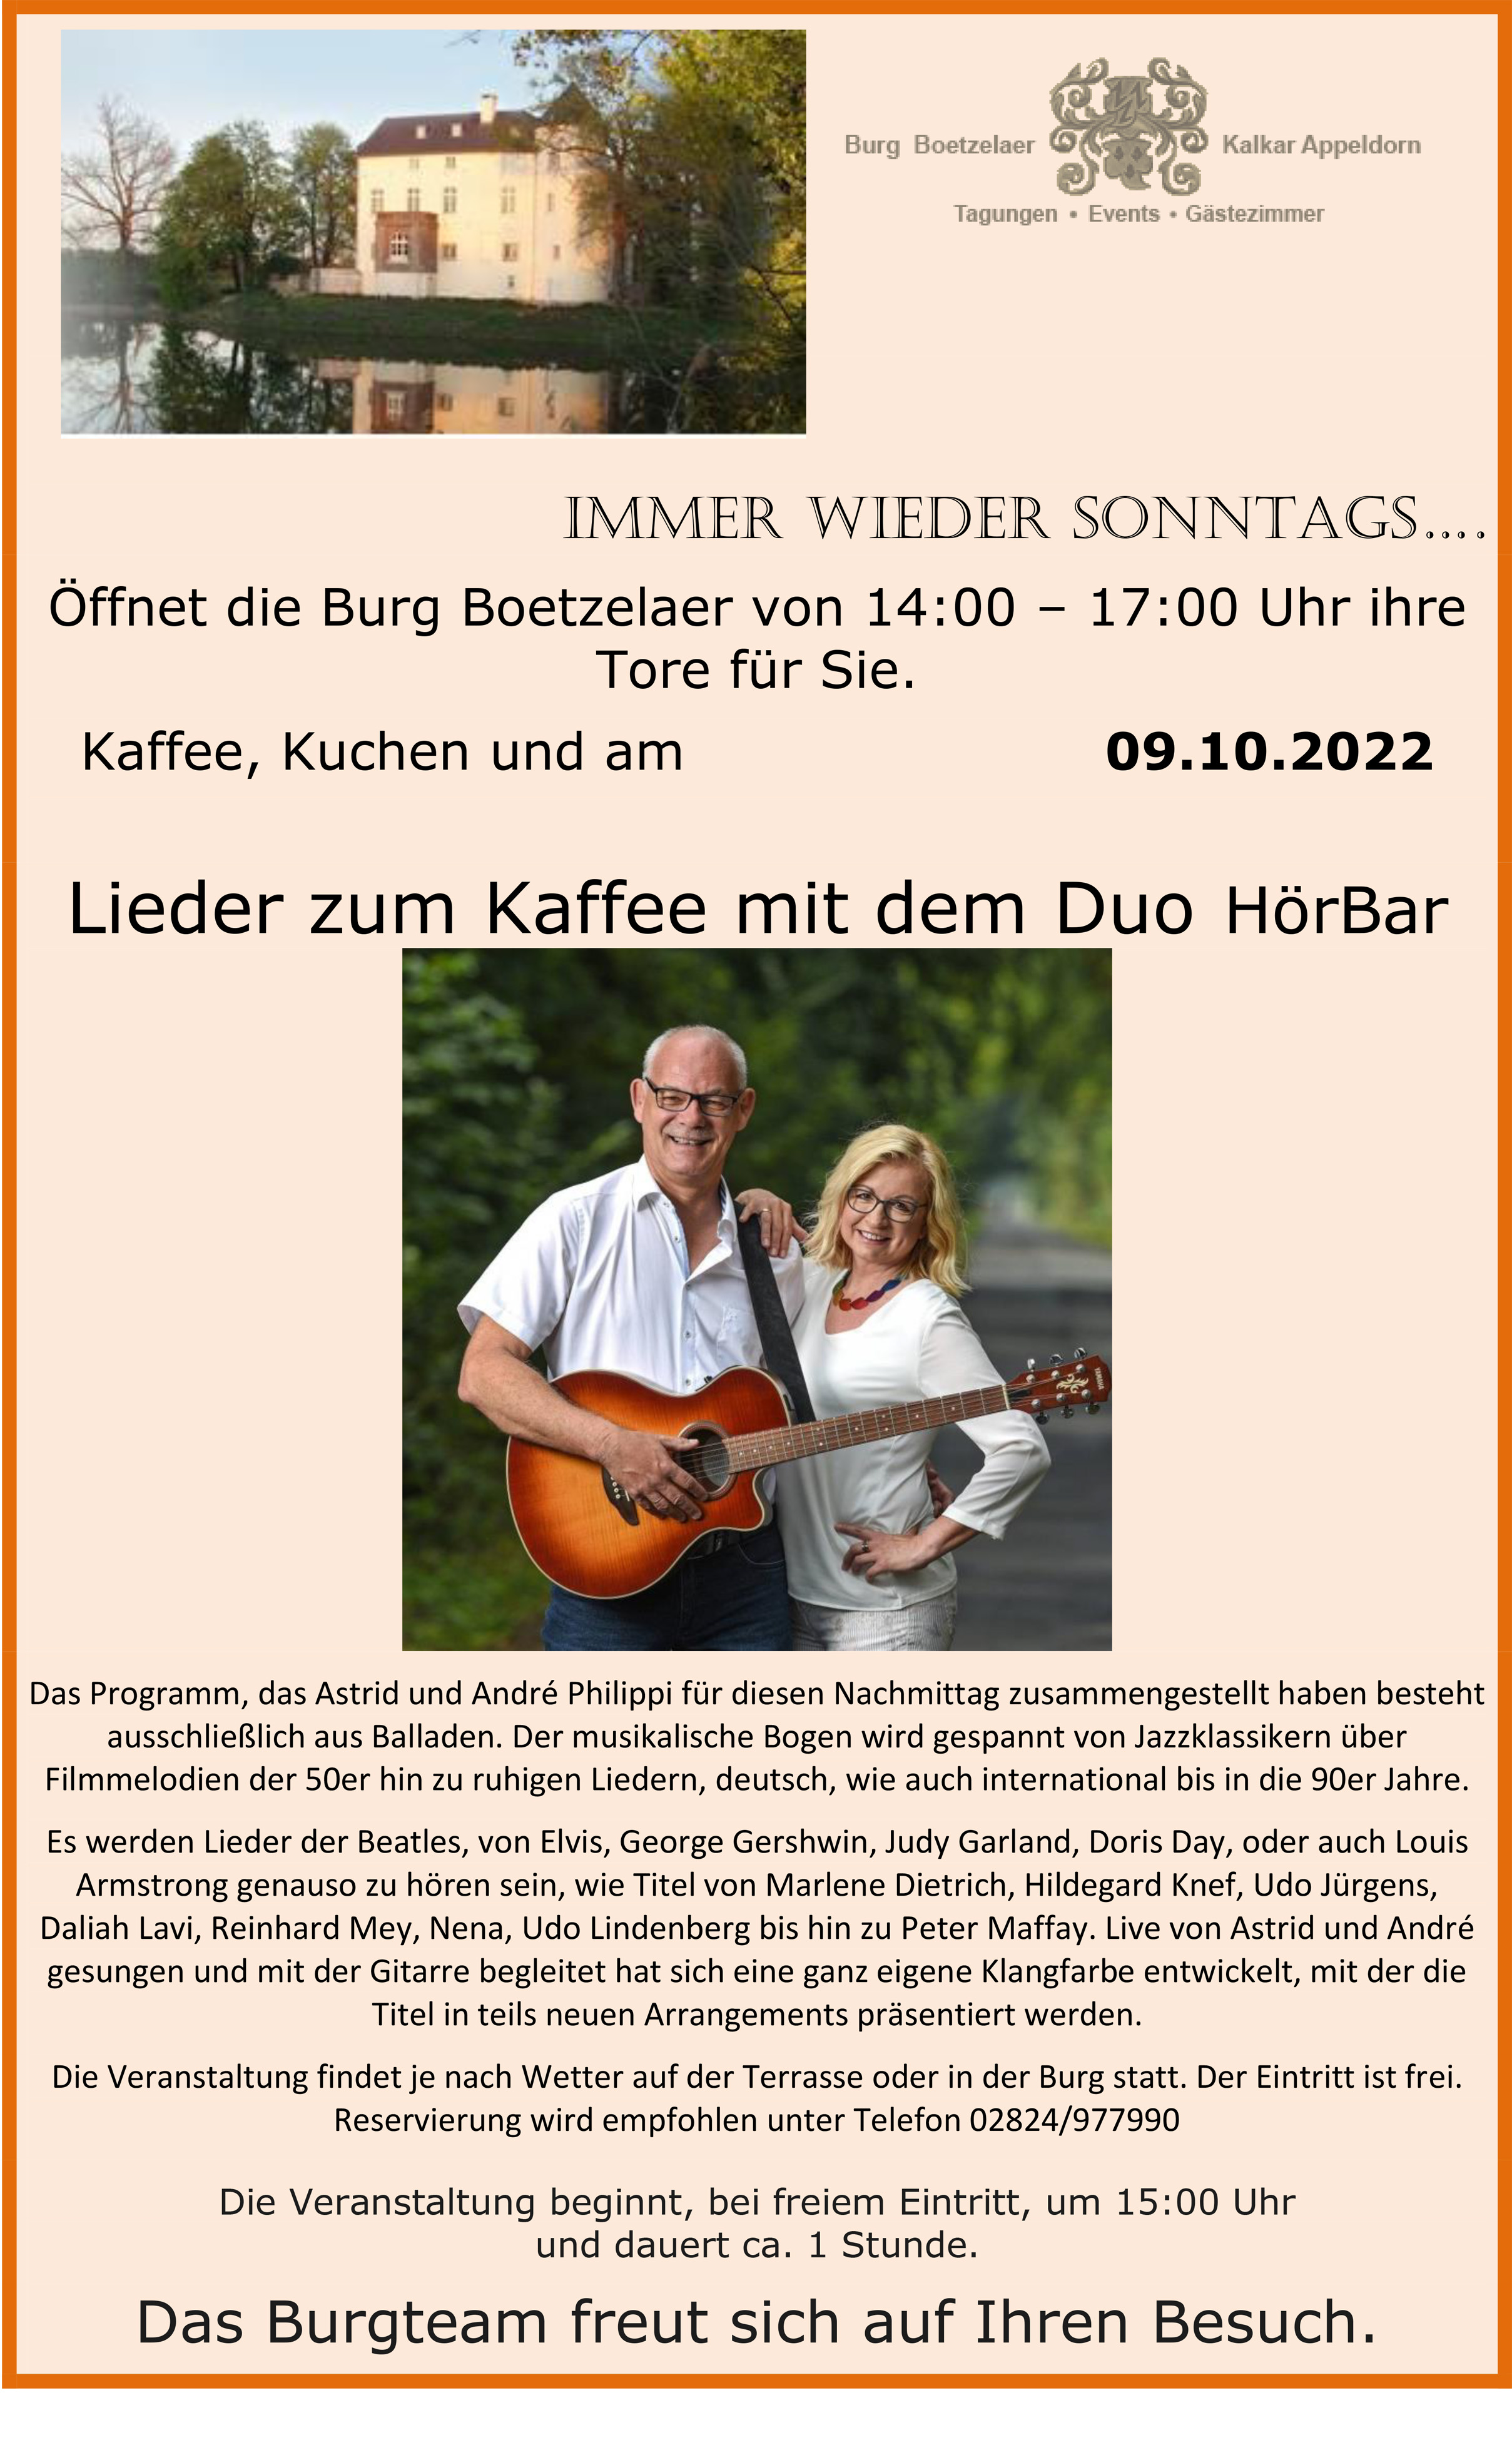 Duo Hörbar in der Burg Boetzelaer 09.10.2022